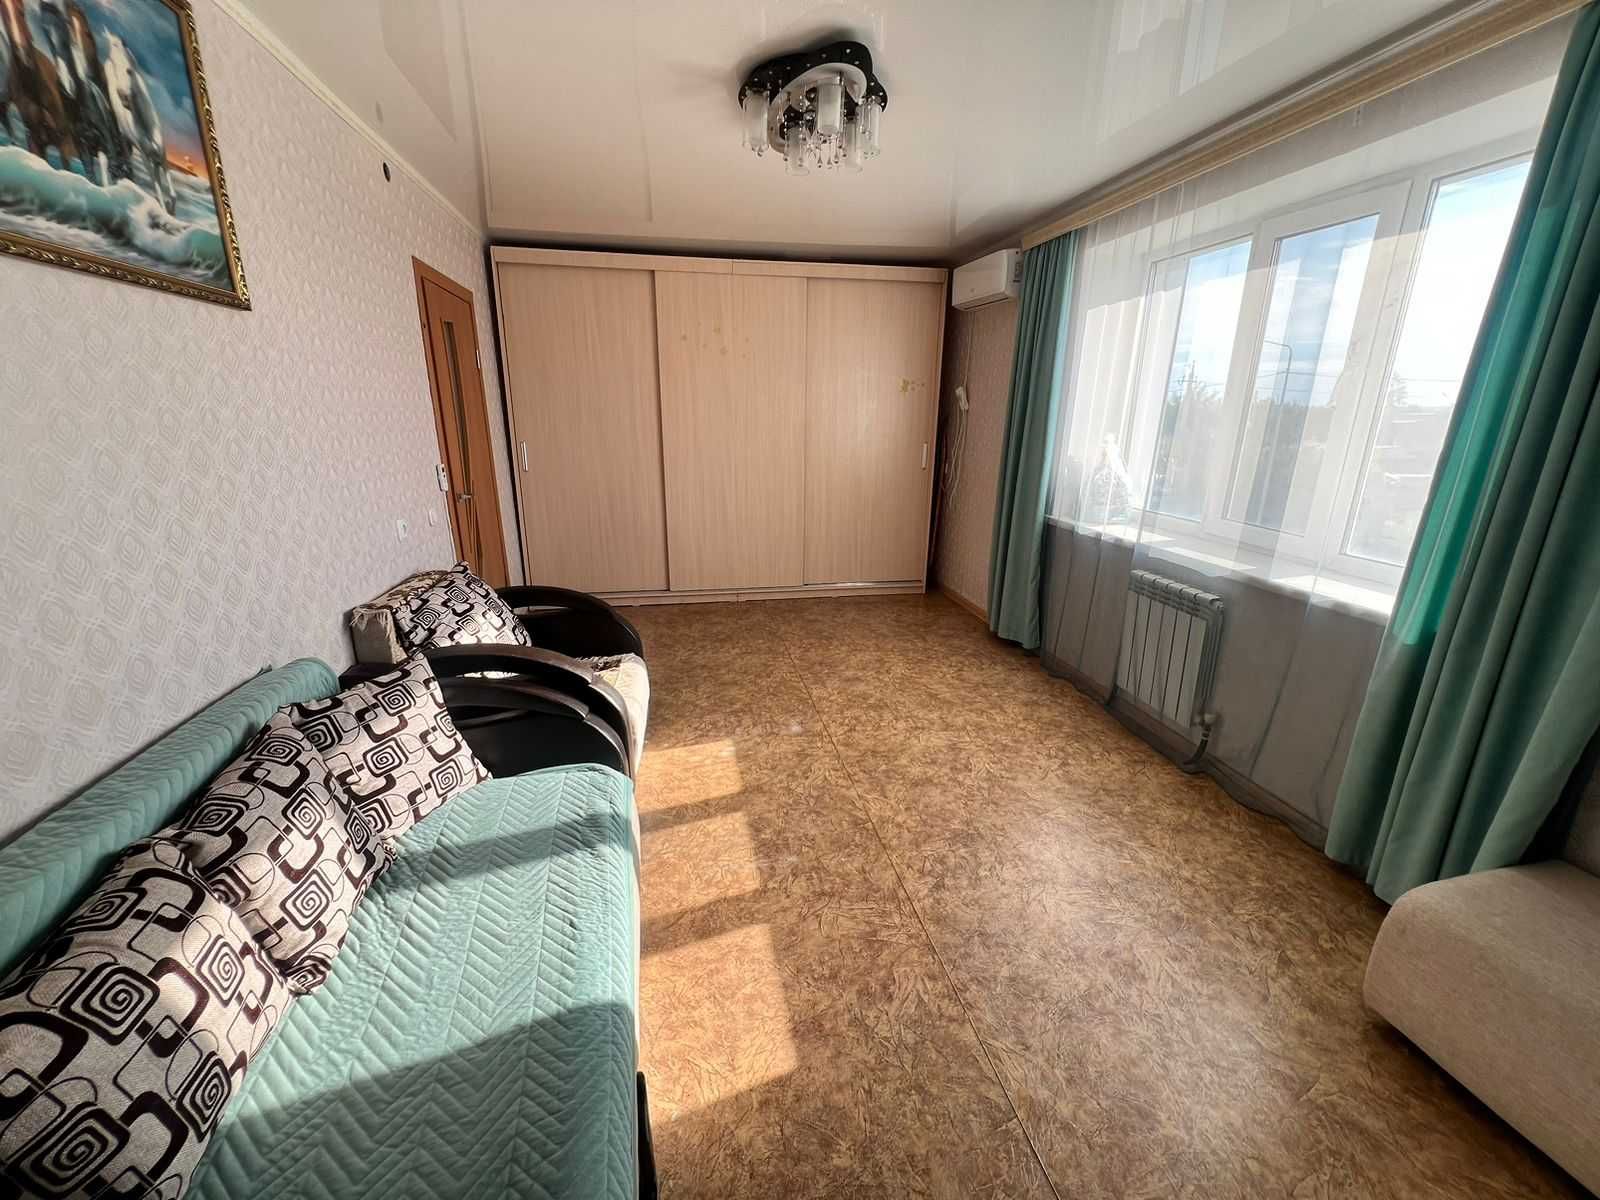 Продам 1 комн квартиру в Тобыл (Затобольске)  в Нурай МОЖНО ПО ОТАУ